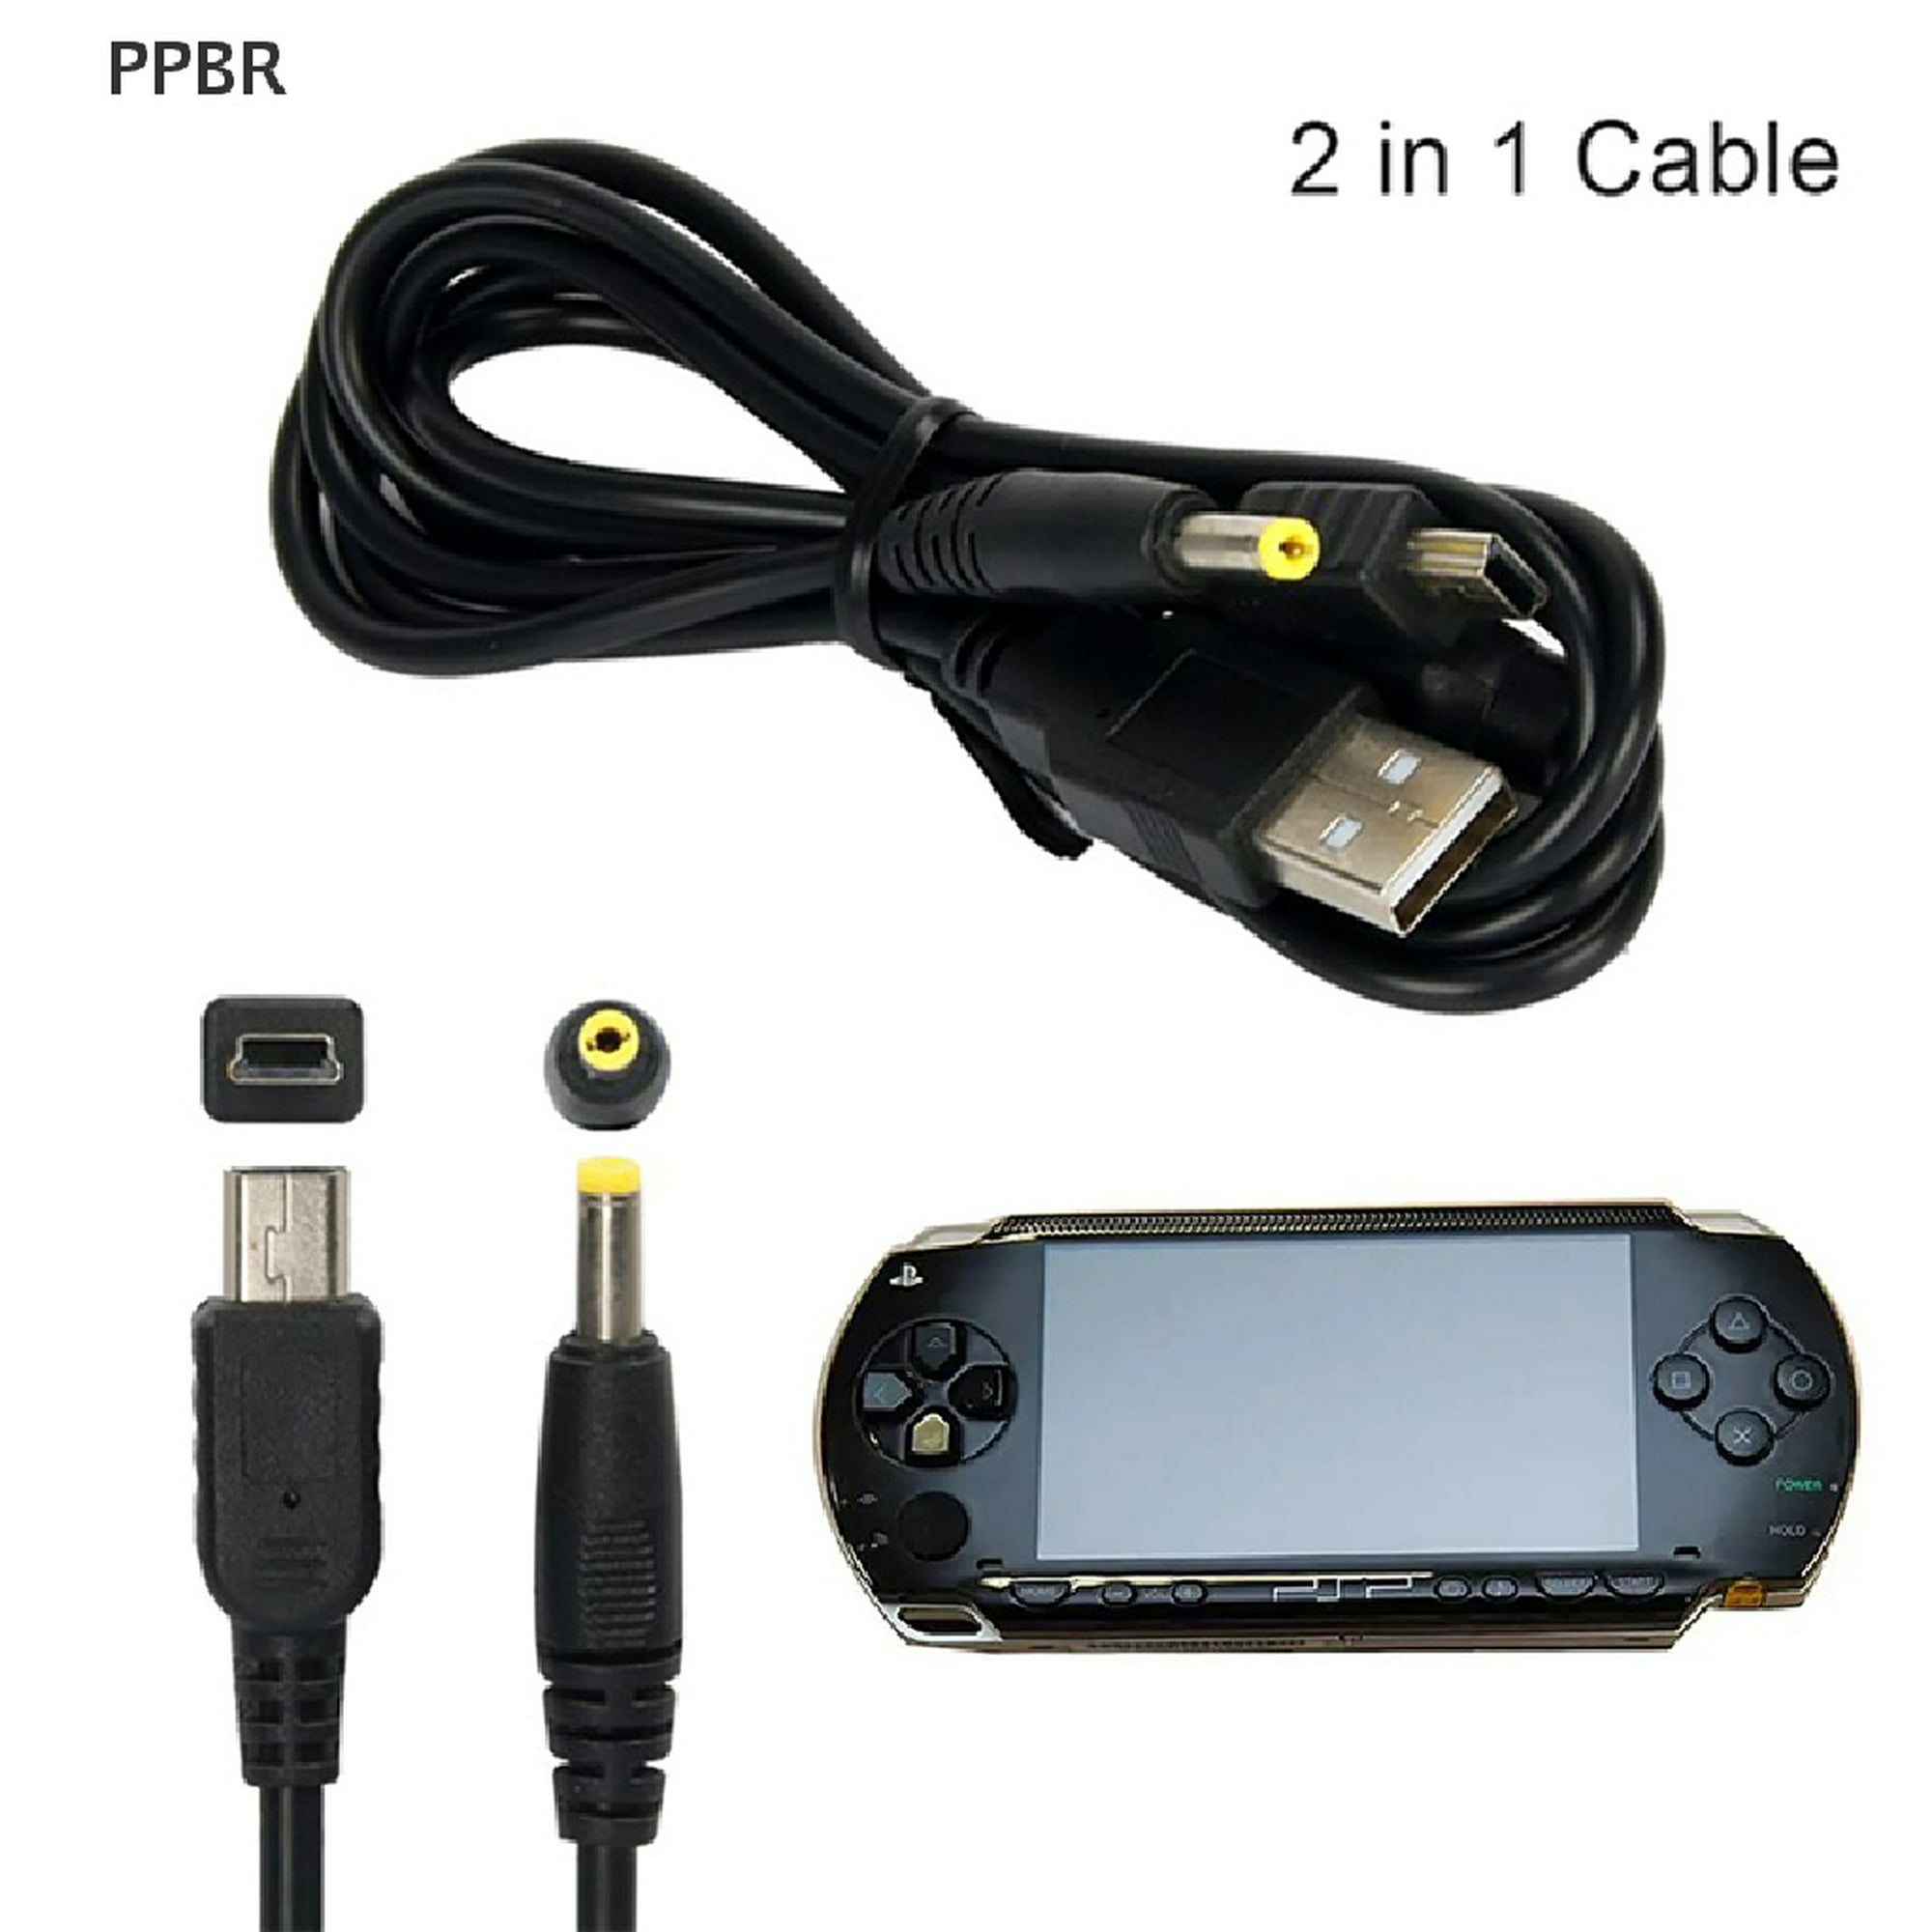 Para PlayStation Portable - PSP Cargadores